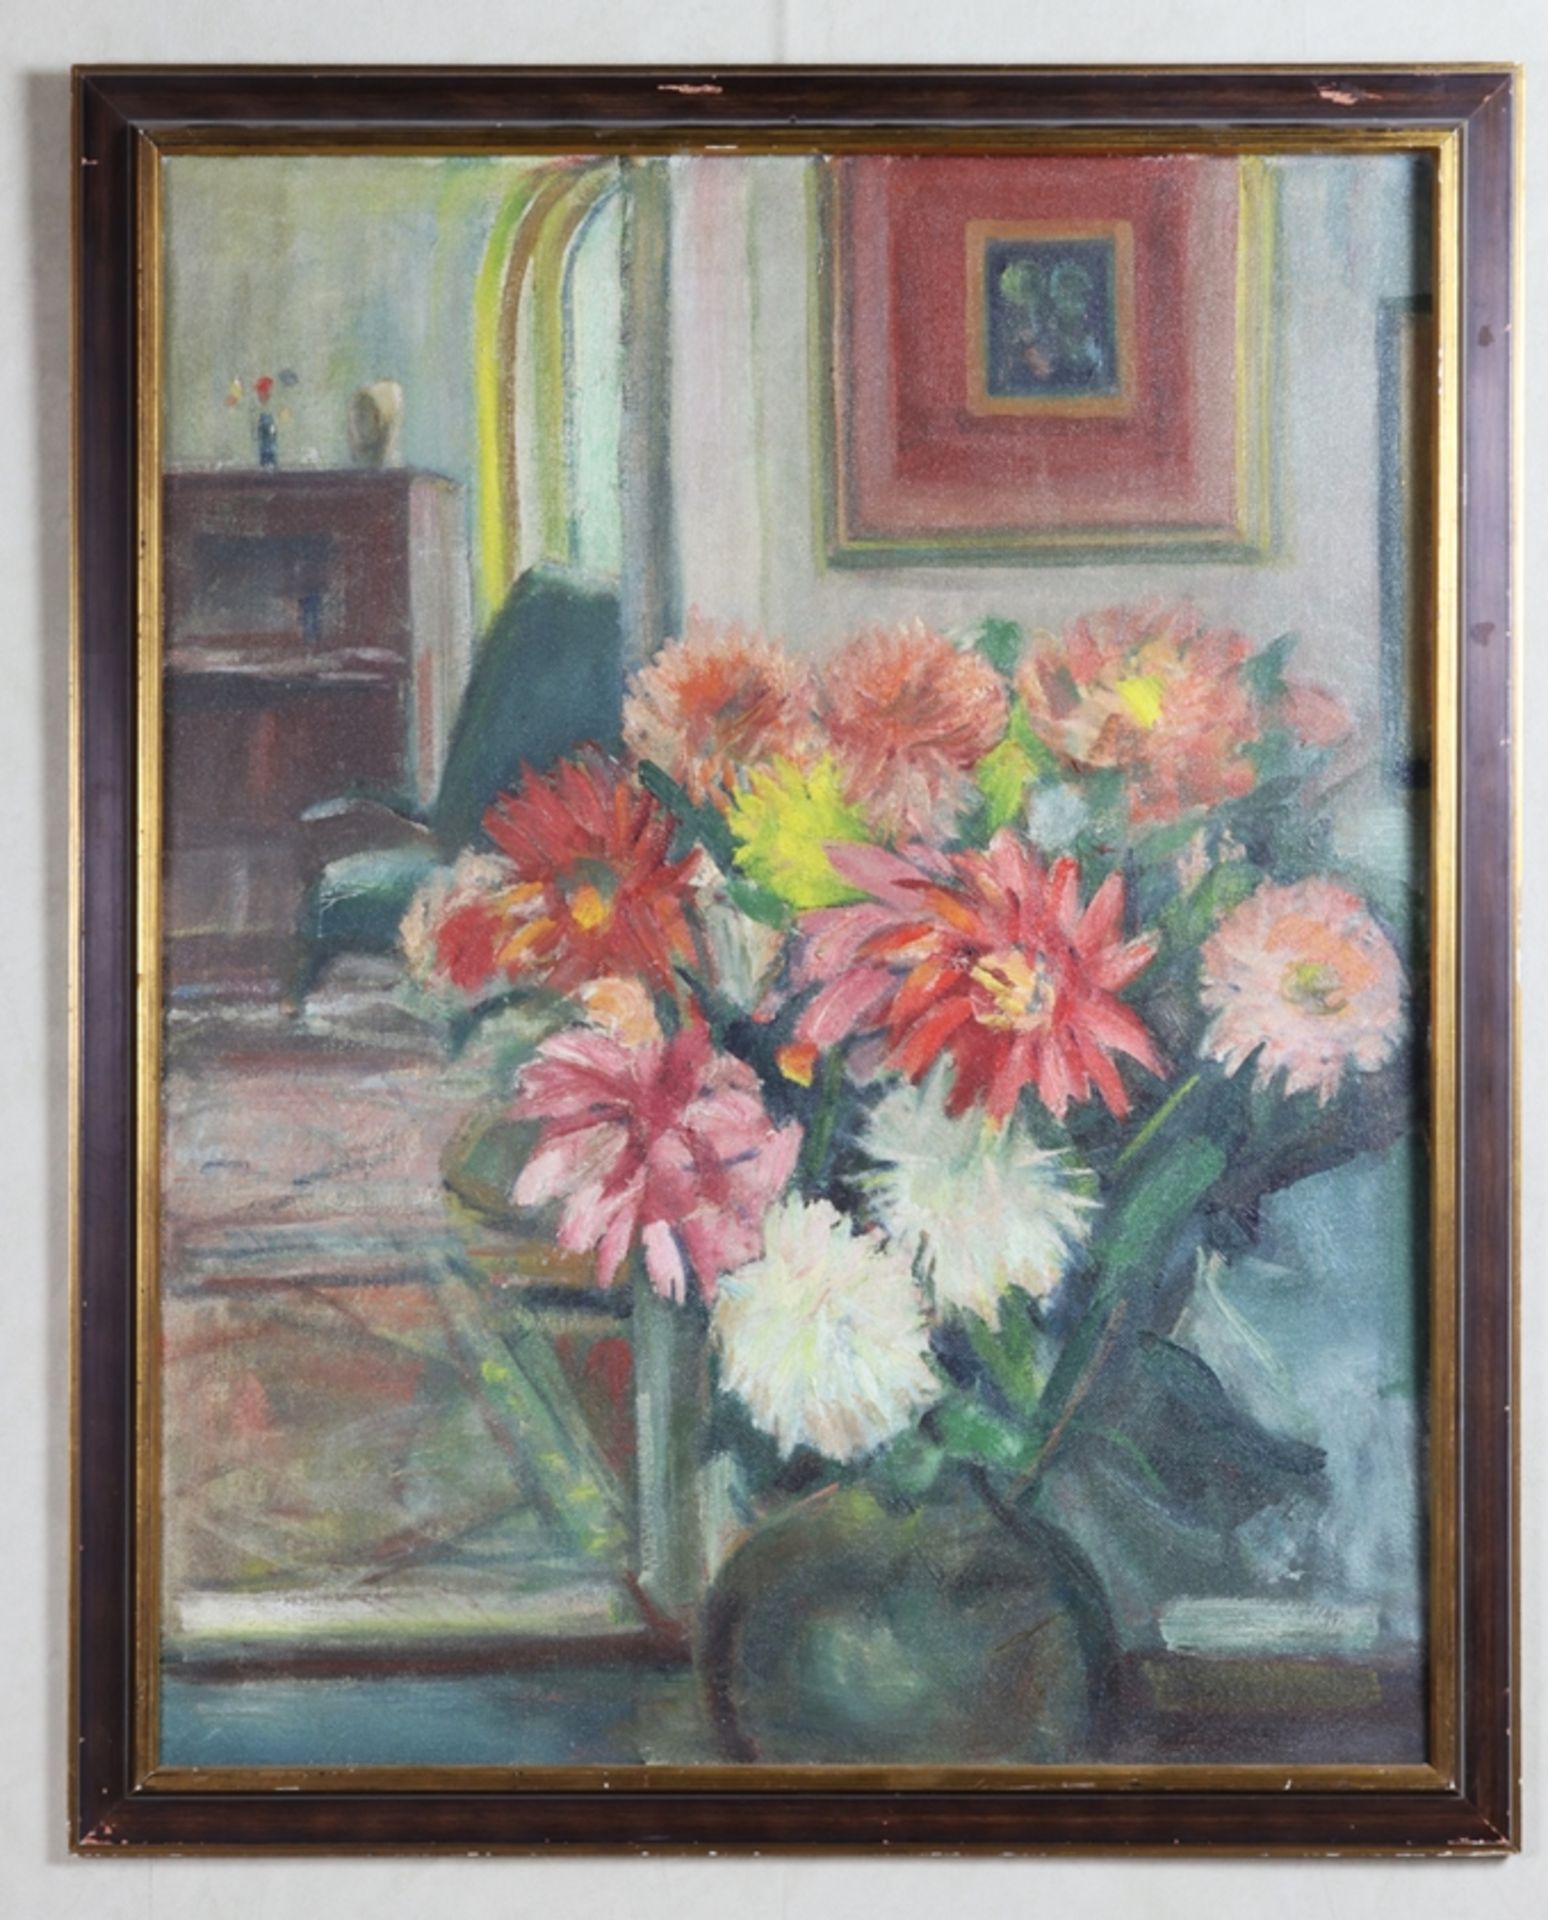 Ölgemälde, Blumenstillleben mit Interieur, Kurt Mohr 1886 - 1973 - Bild 2 aus 2